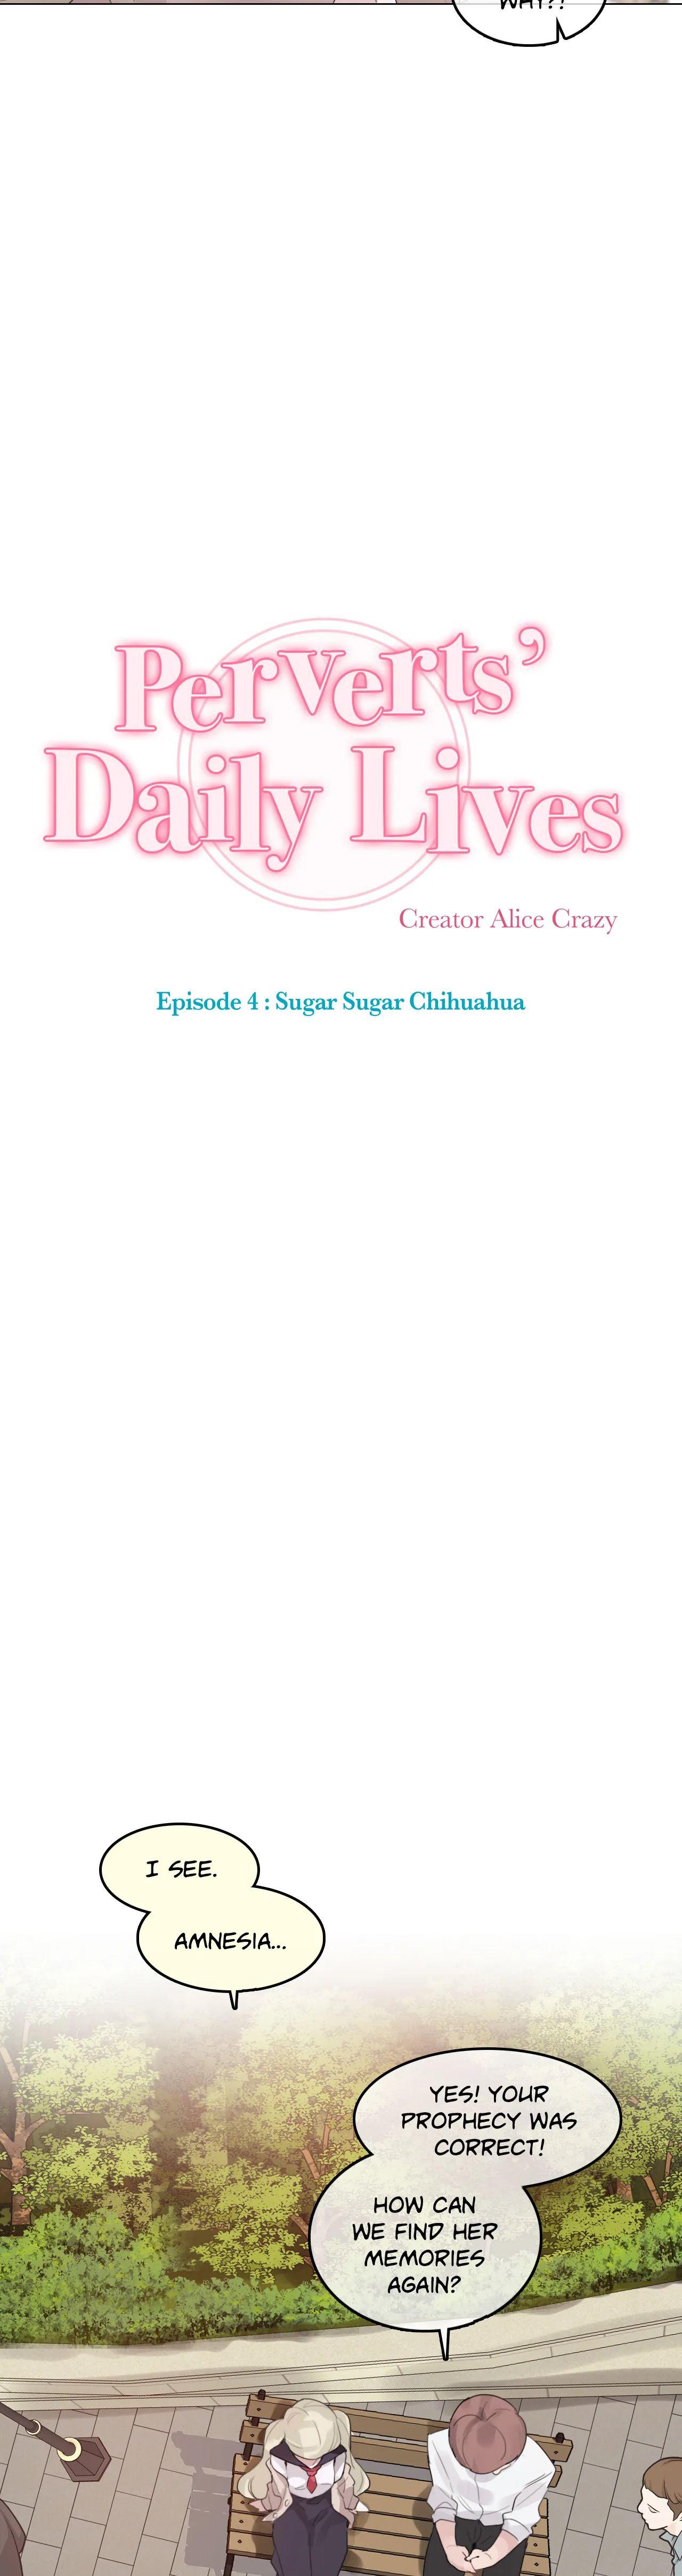 Perverts' Daily Lives Episode 4: Sugar Sugar Chihuahua 318